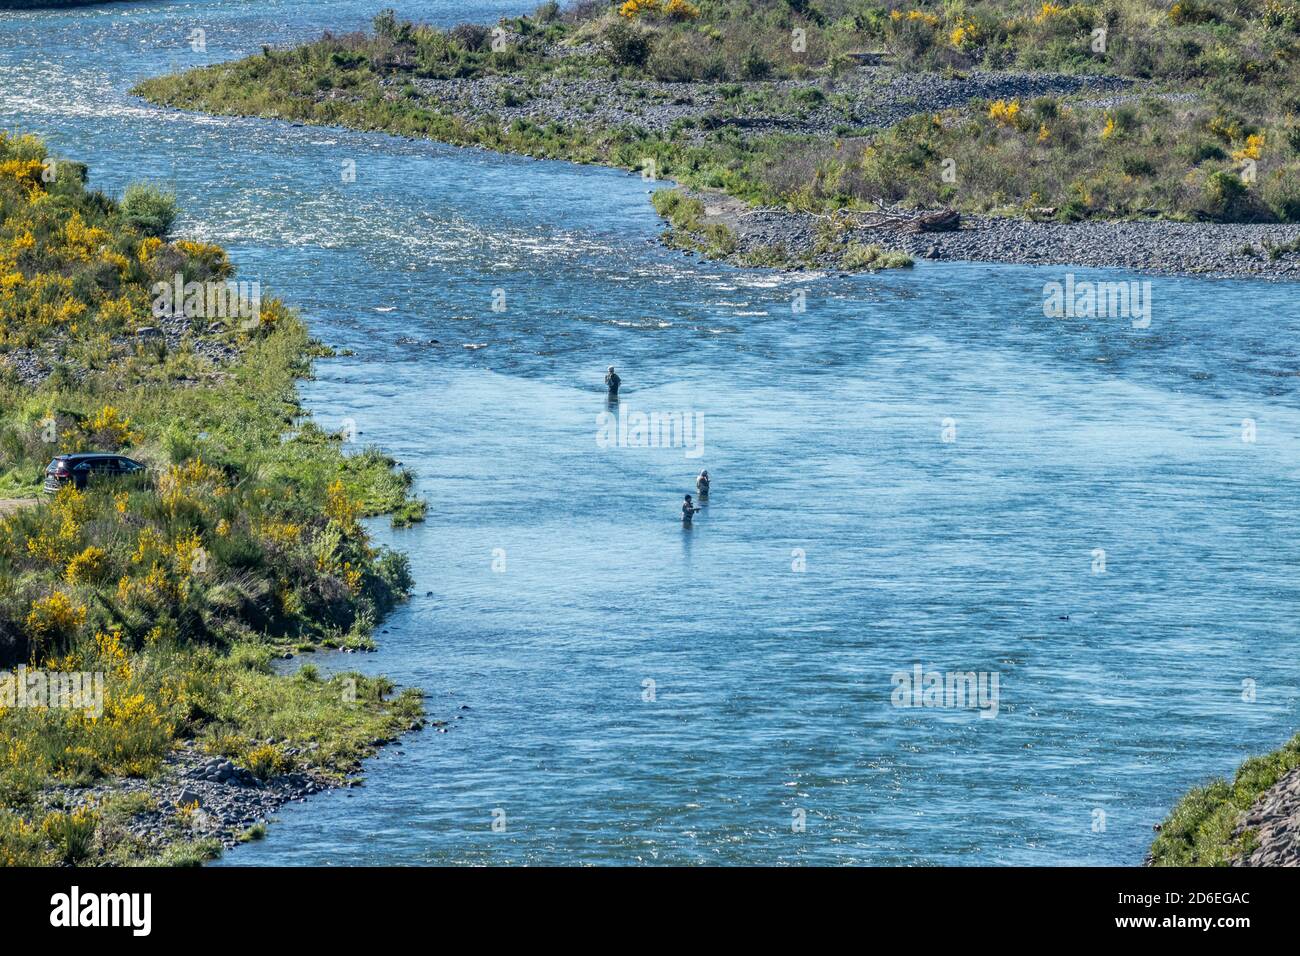 Flyfishing in Tongariro River Stock Photo